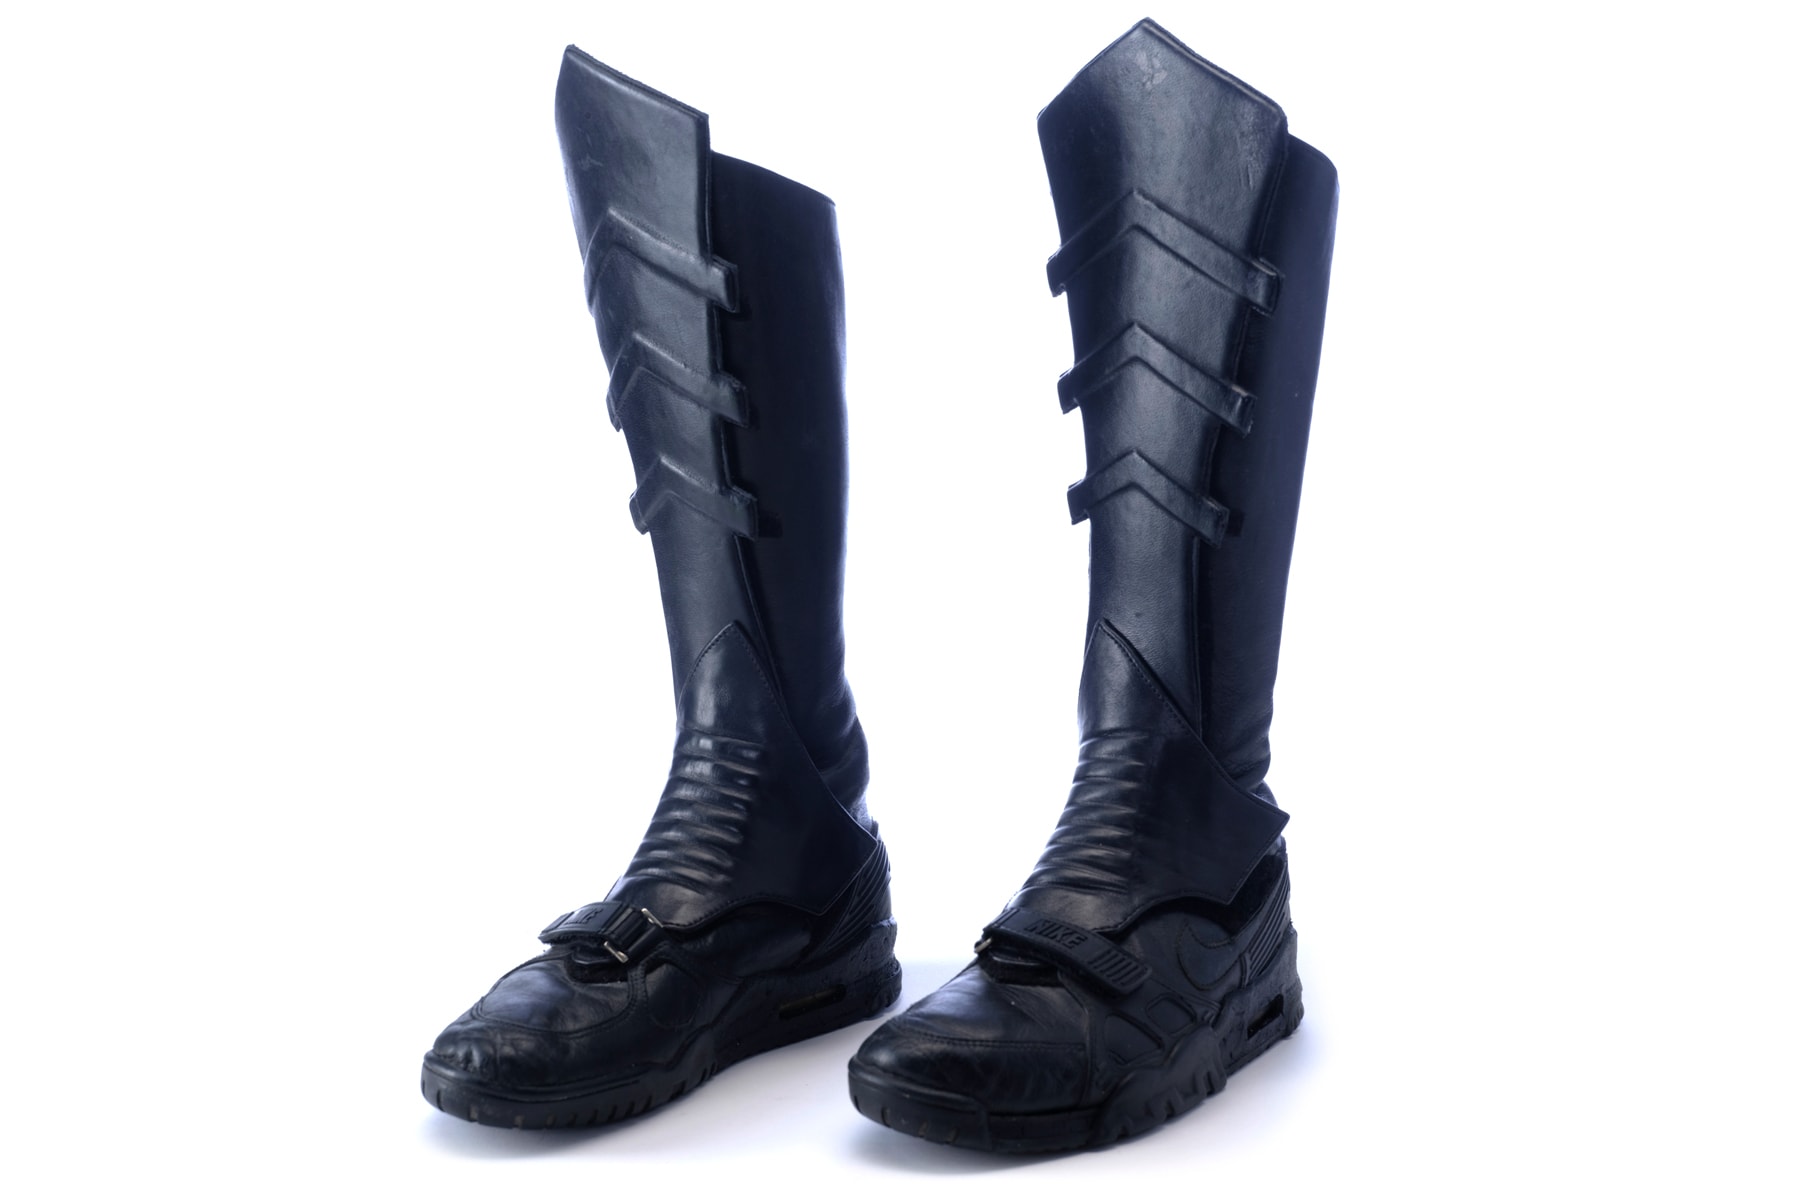 『バットマン』用にカスタムされた特別なナイキエアトレーナーが競売に Batman 1989 Michael Keaton Nike Air Trainer Bat Boots Propstore Auction shoe sneakers footwear kicks props 